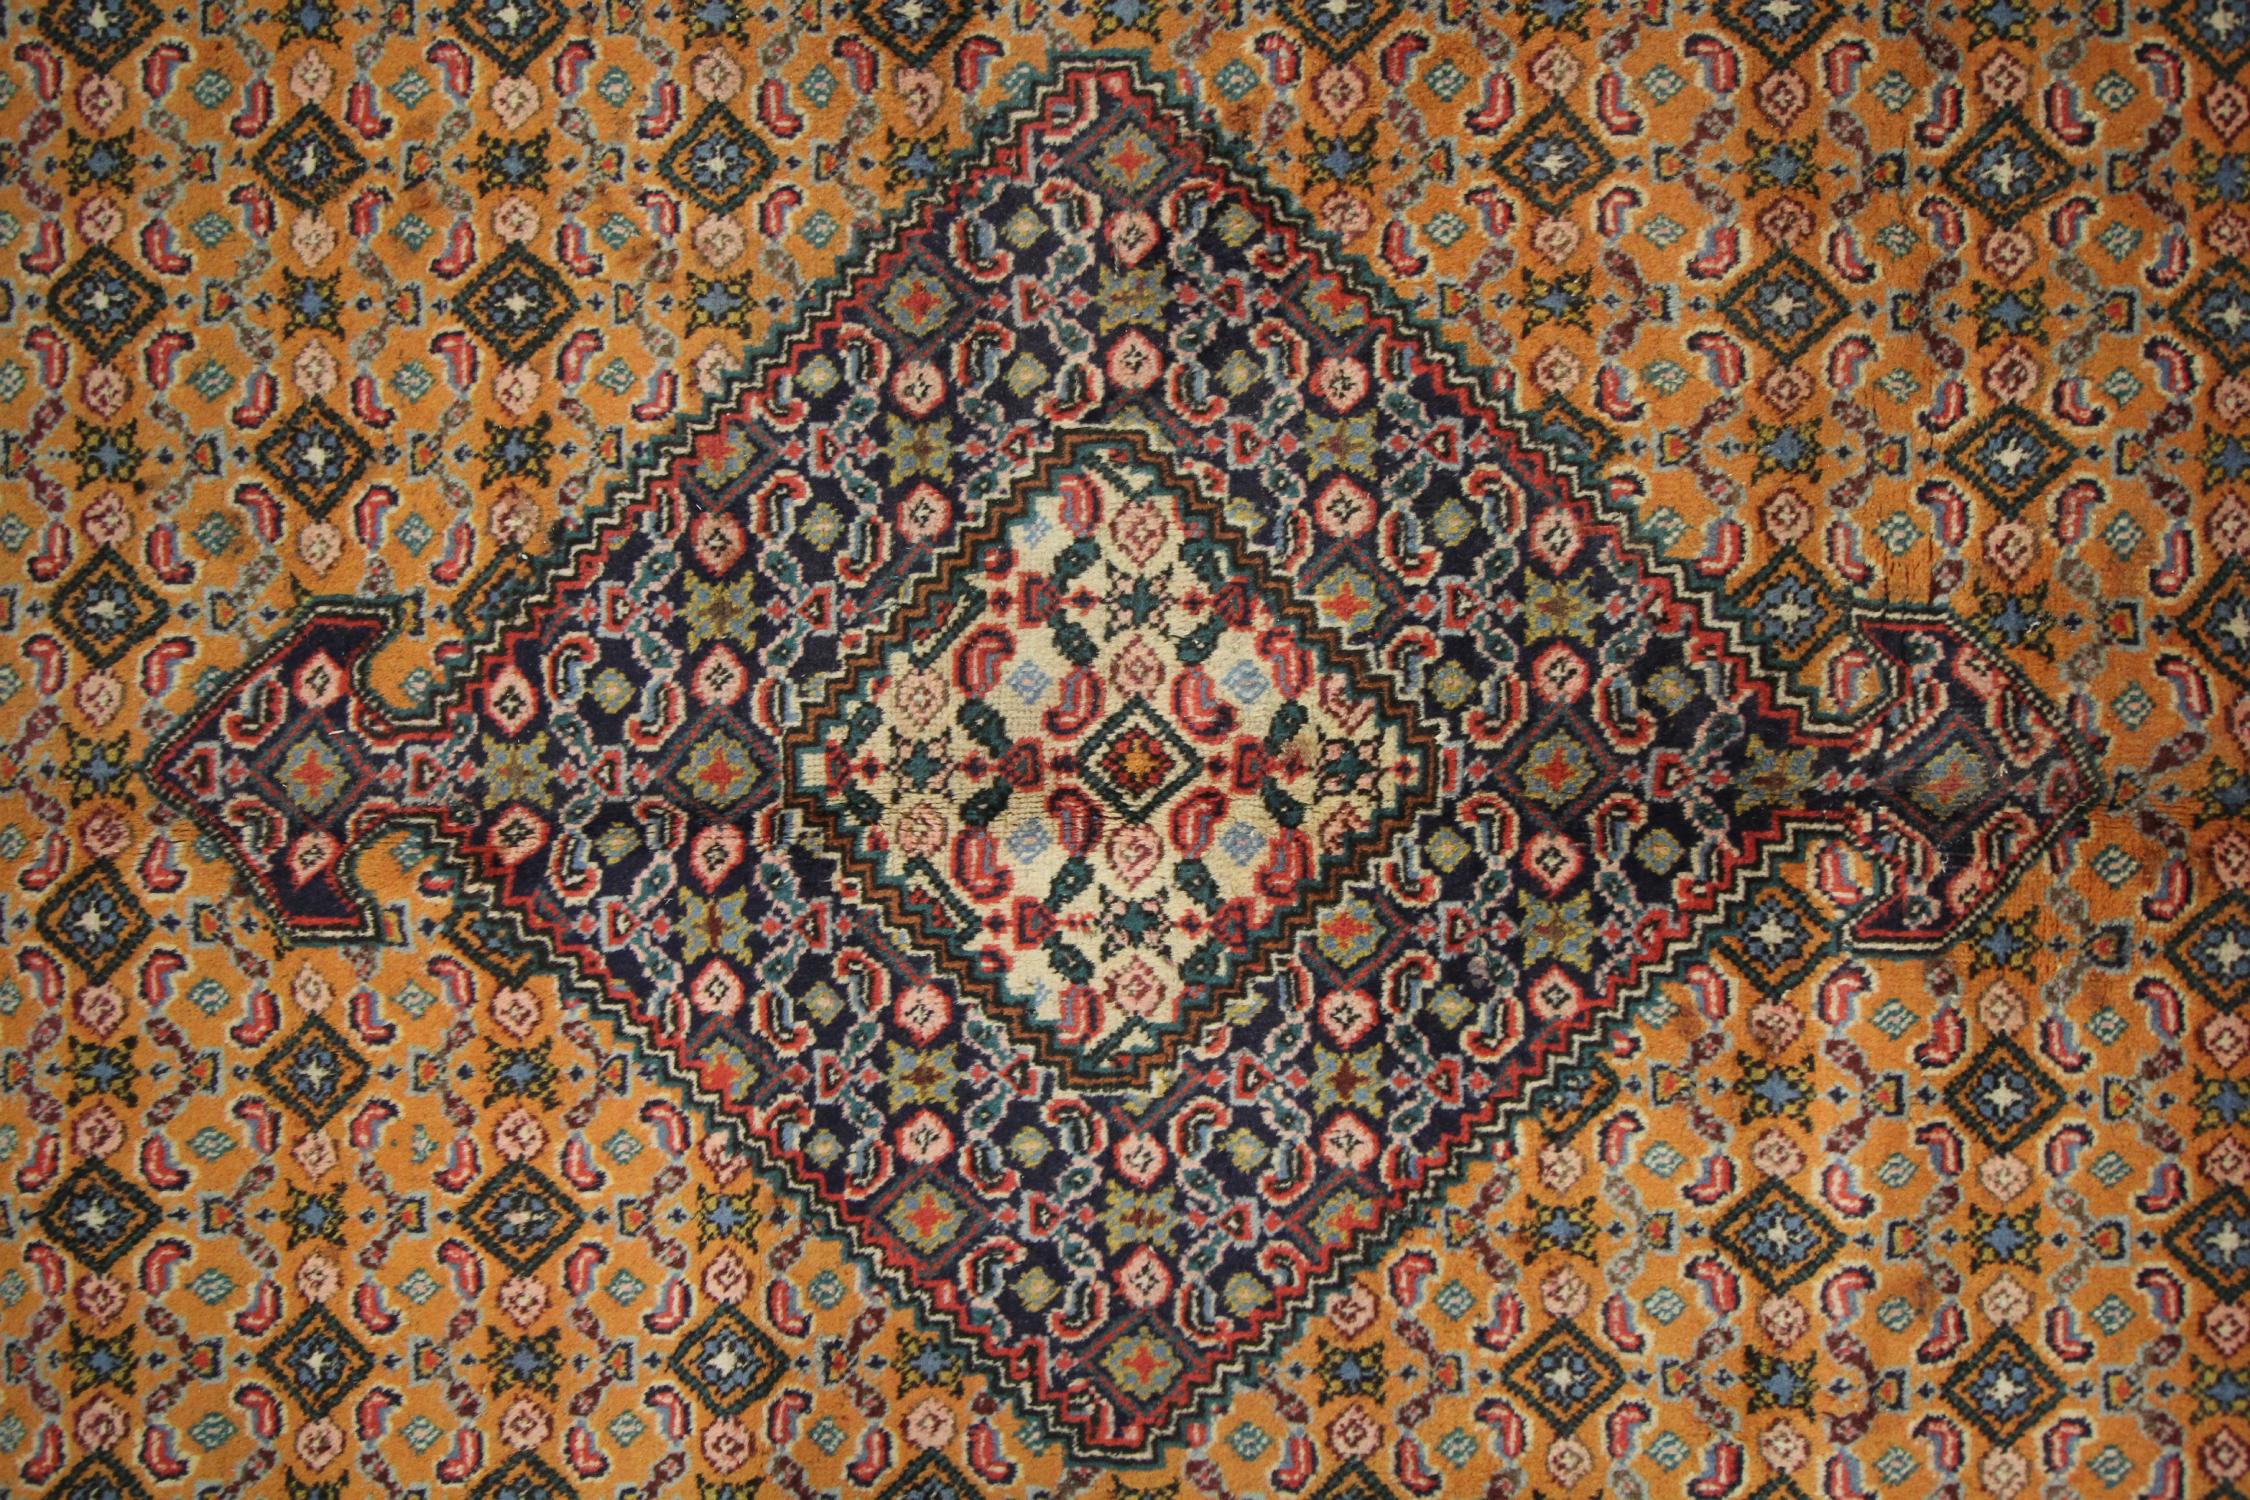 Vegetable Dyed Vintage Turkish Carpet Handwoven Gold Wool Living Room Rug For Sale